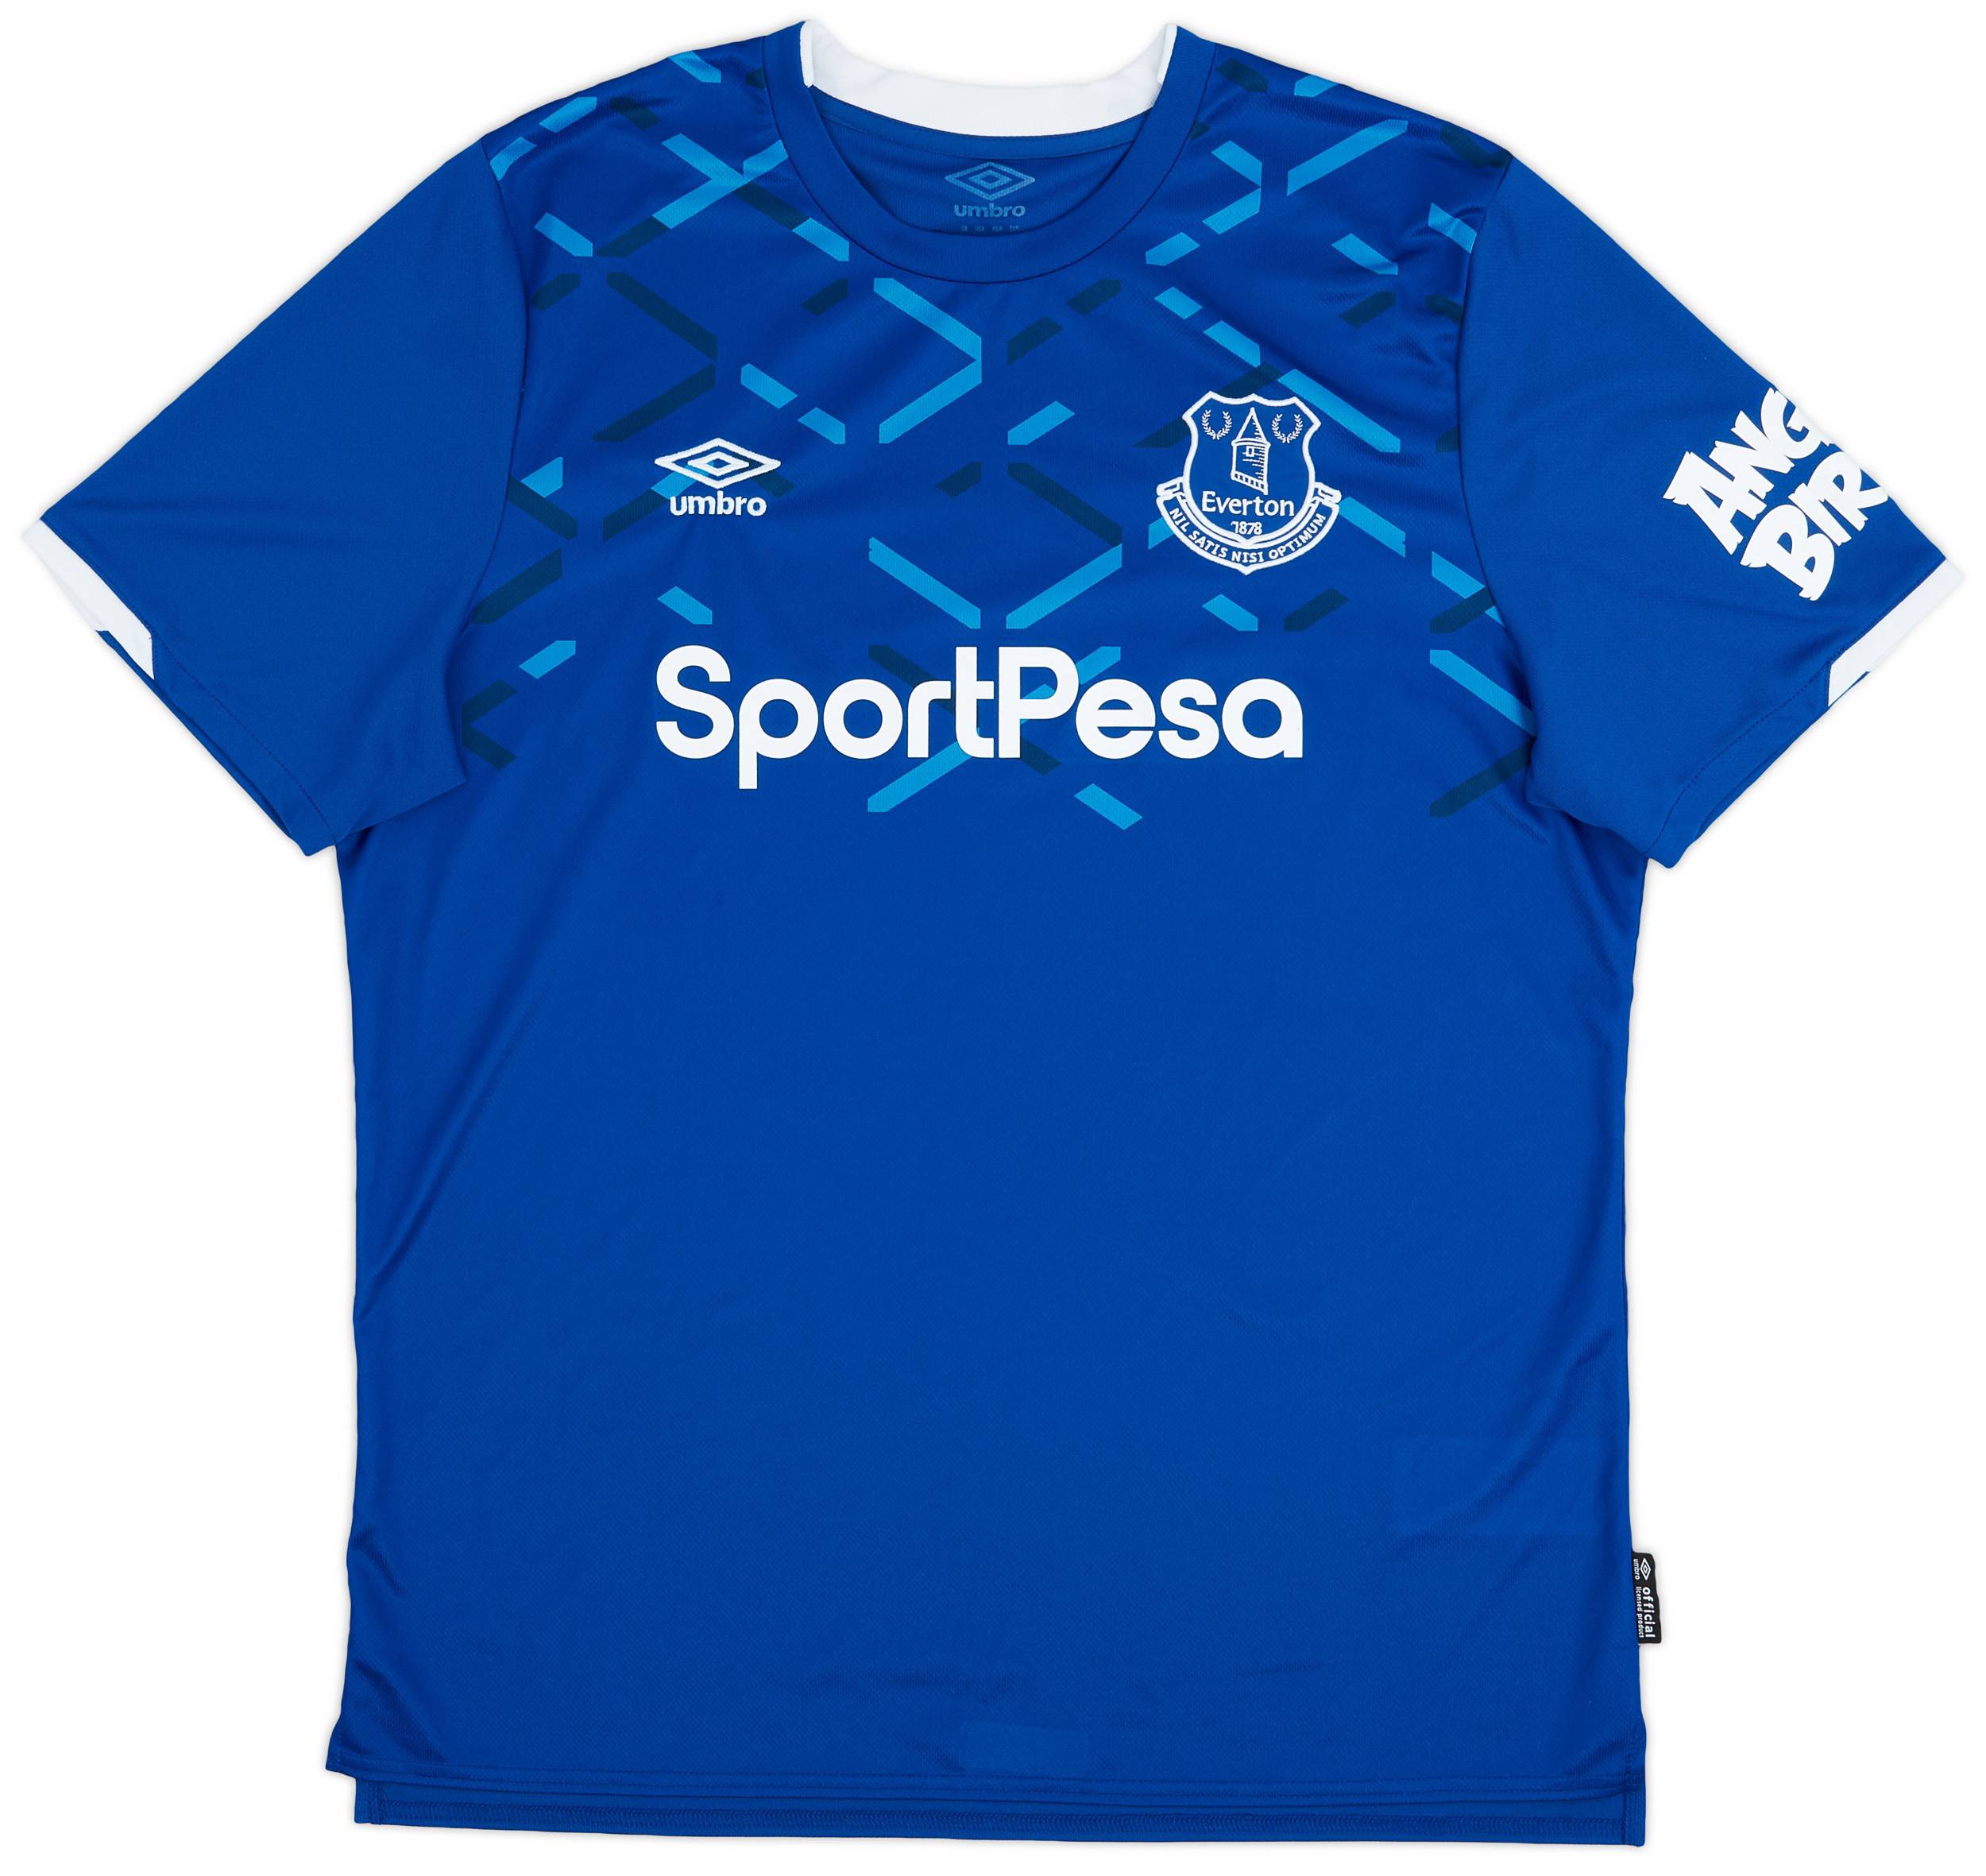 2019-20 Everton Home Shirt - 9/10 - (XL)